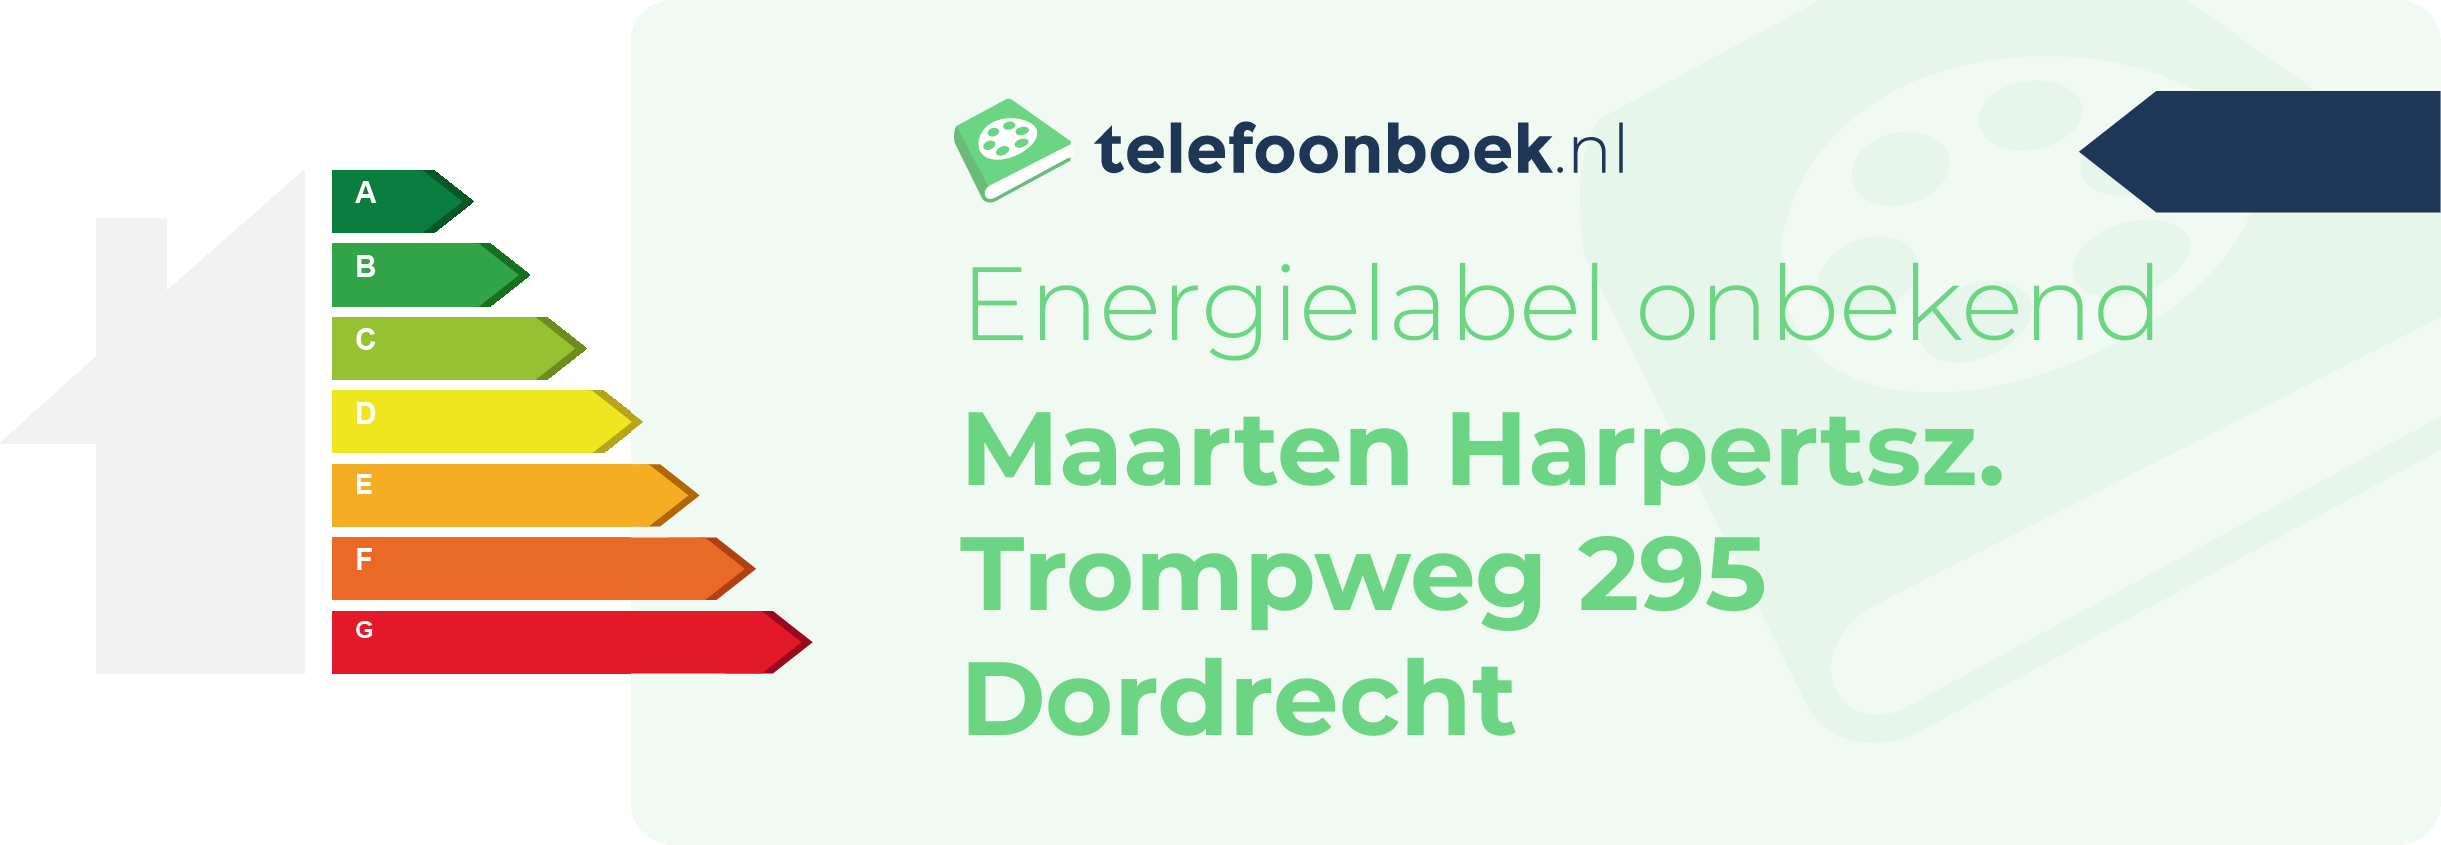 Energielabel Maarten Harpertsz. Trompweg 295 Dordrecht